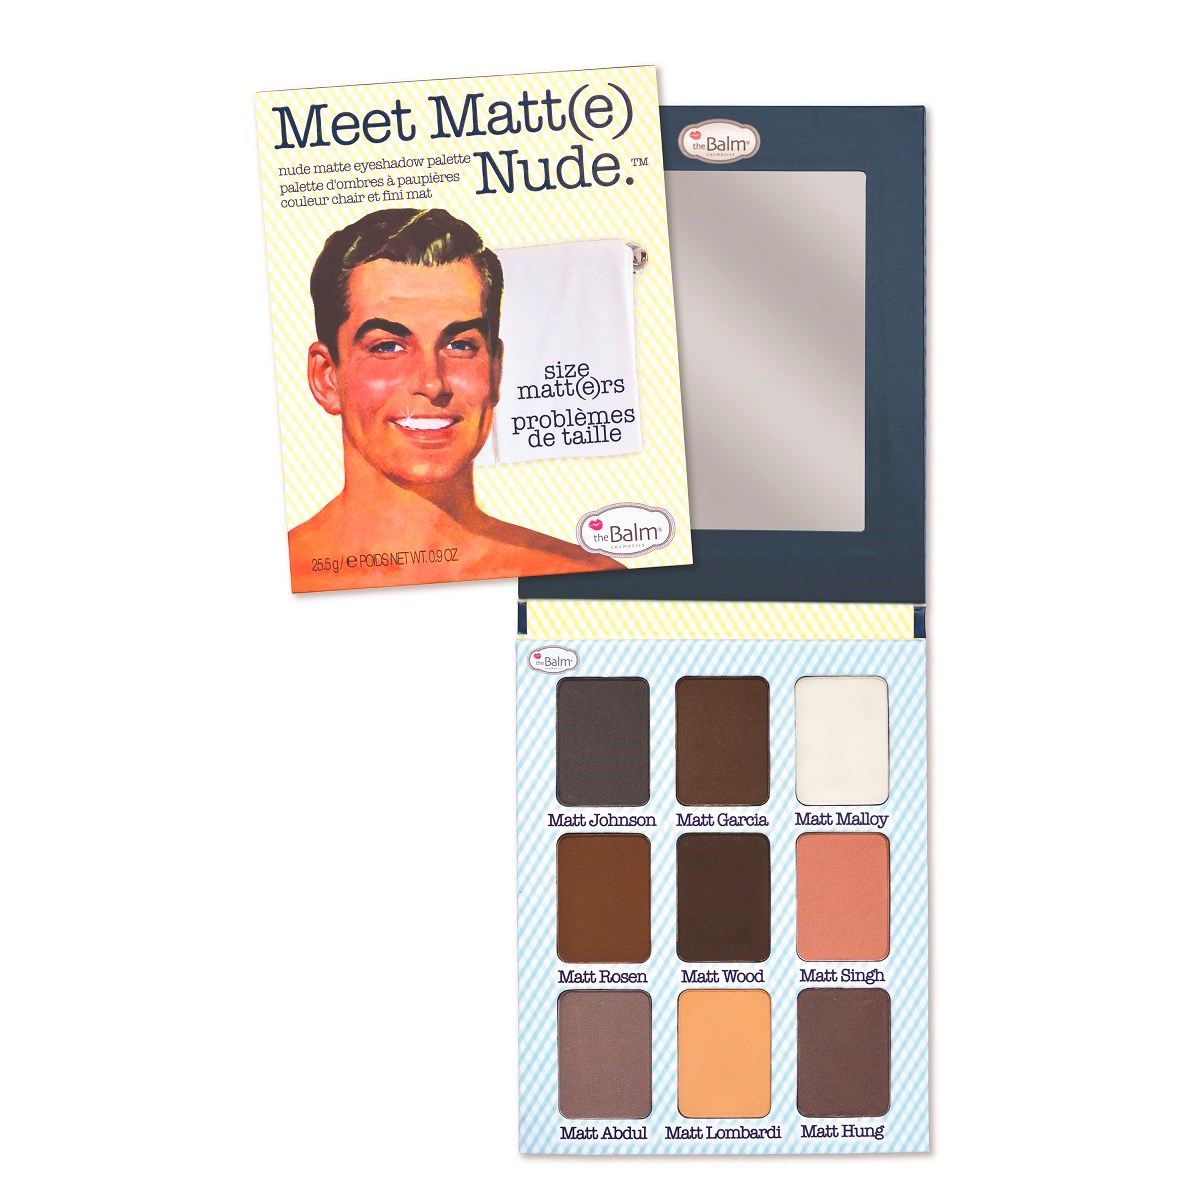 Läs mer om the Balm Meet Matt(e) Nude Eyeshadow Palette